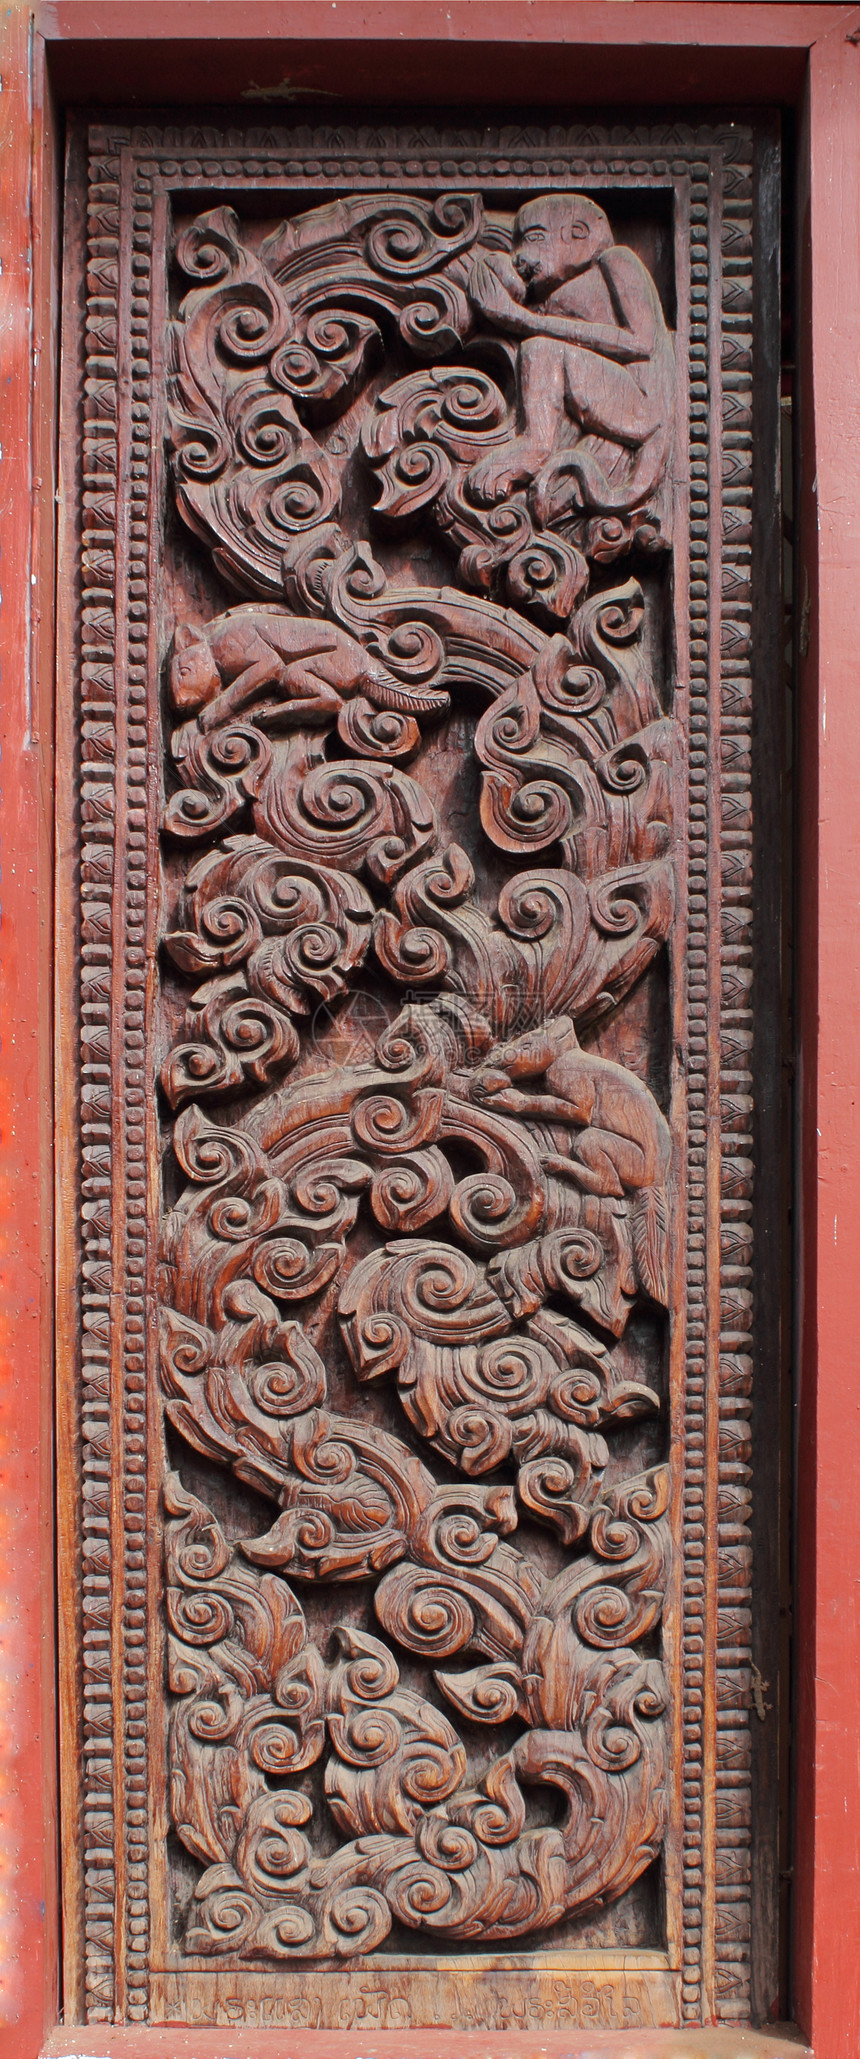 门外装饰木头装饰品遗产风格文化雕刻入口寺庙古董手工宗教图片